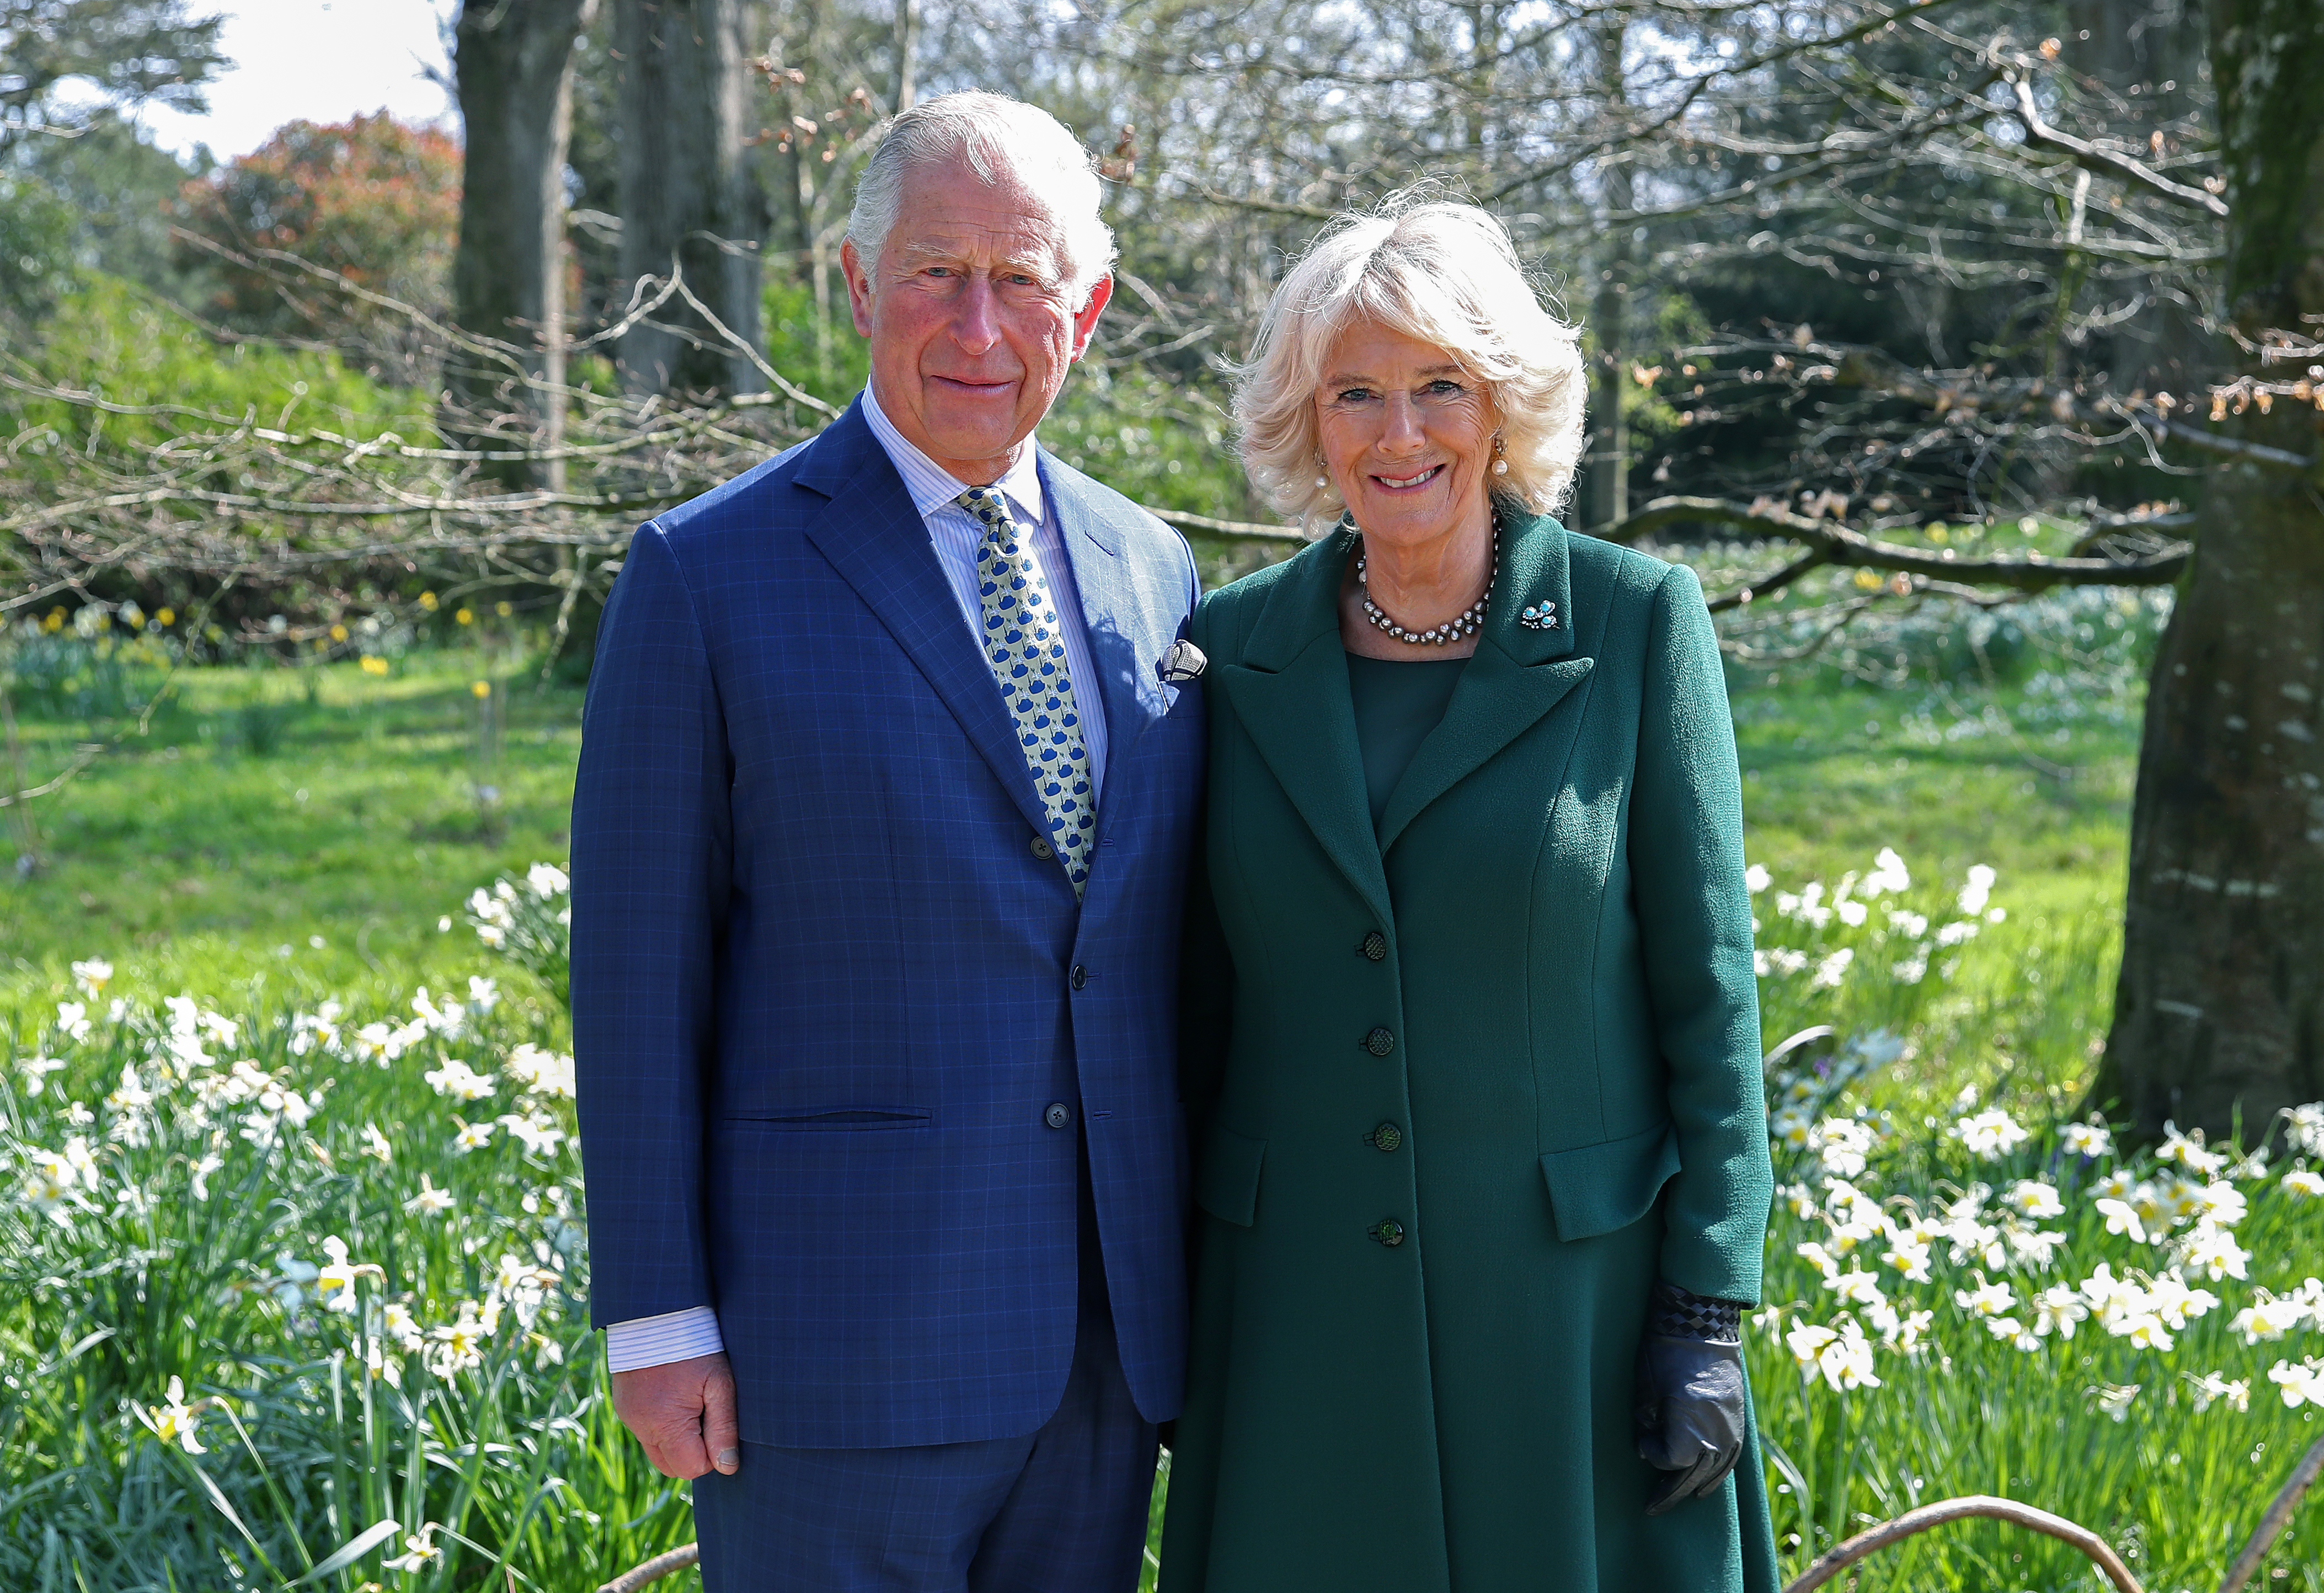 Le roi Charles III et la reine Camilla, anciens duc et duchesse de Cornouailles, au château de Hillsborough le 09 avril 2019 | Source : Getty Images